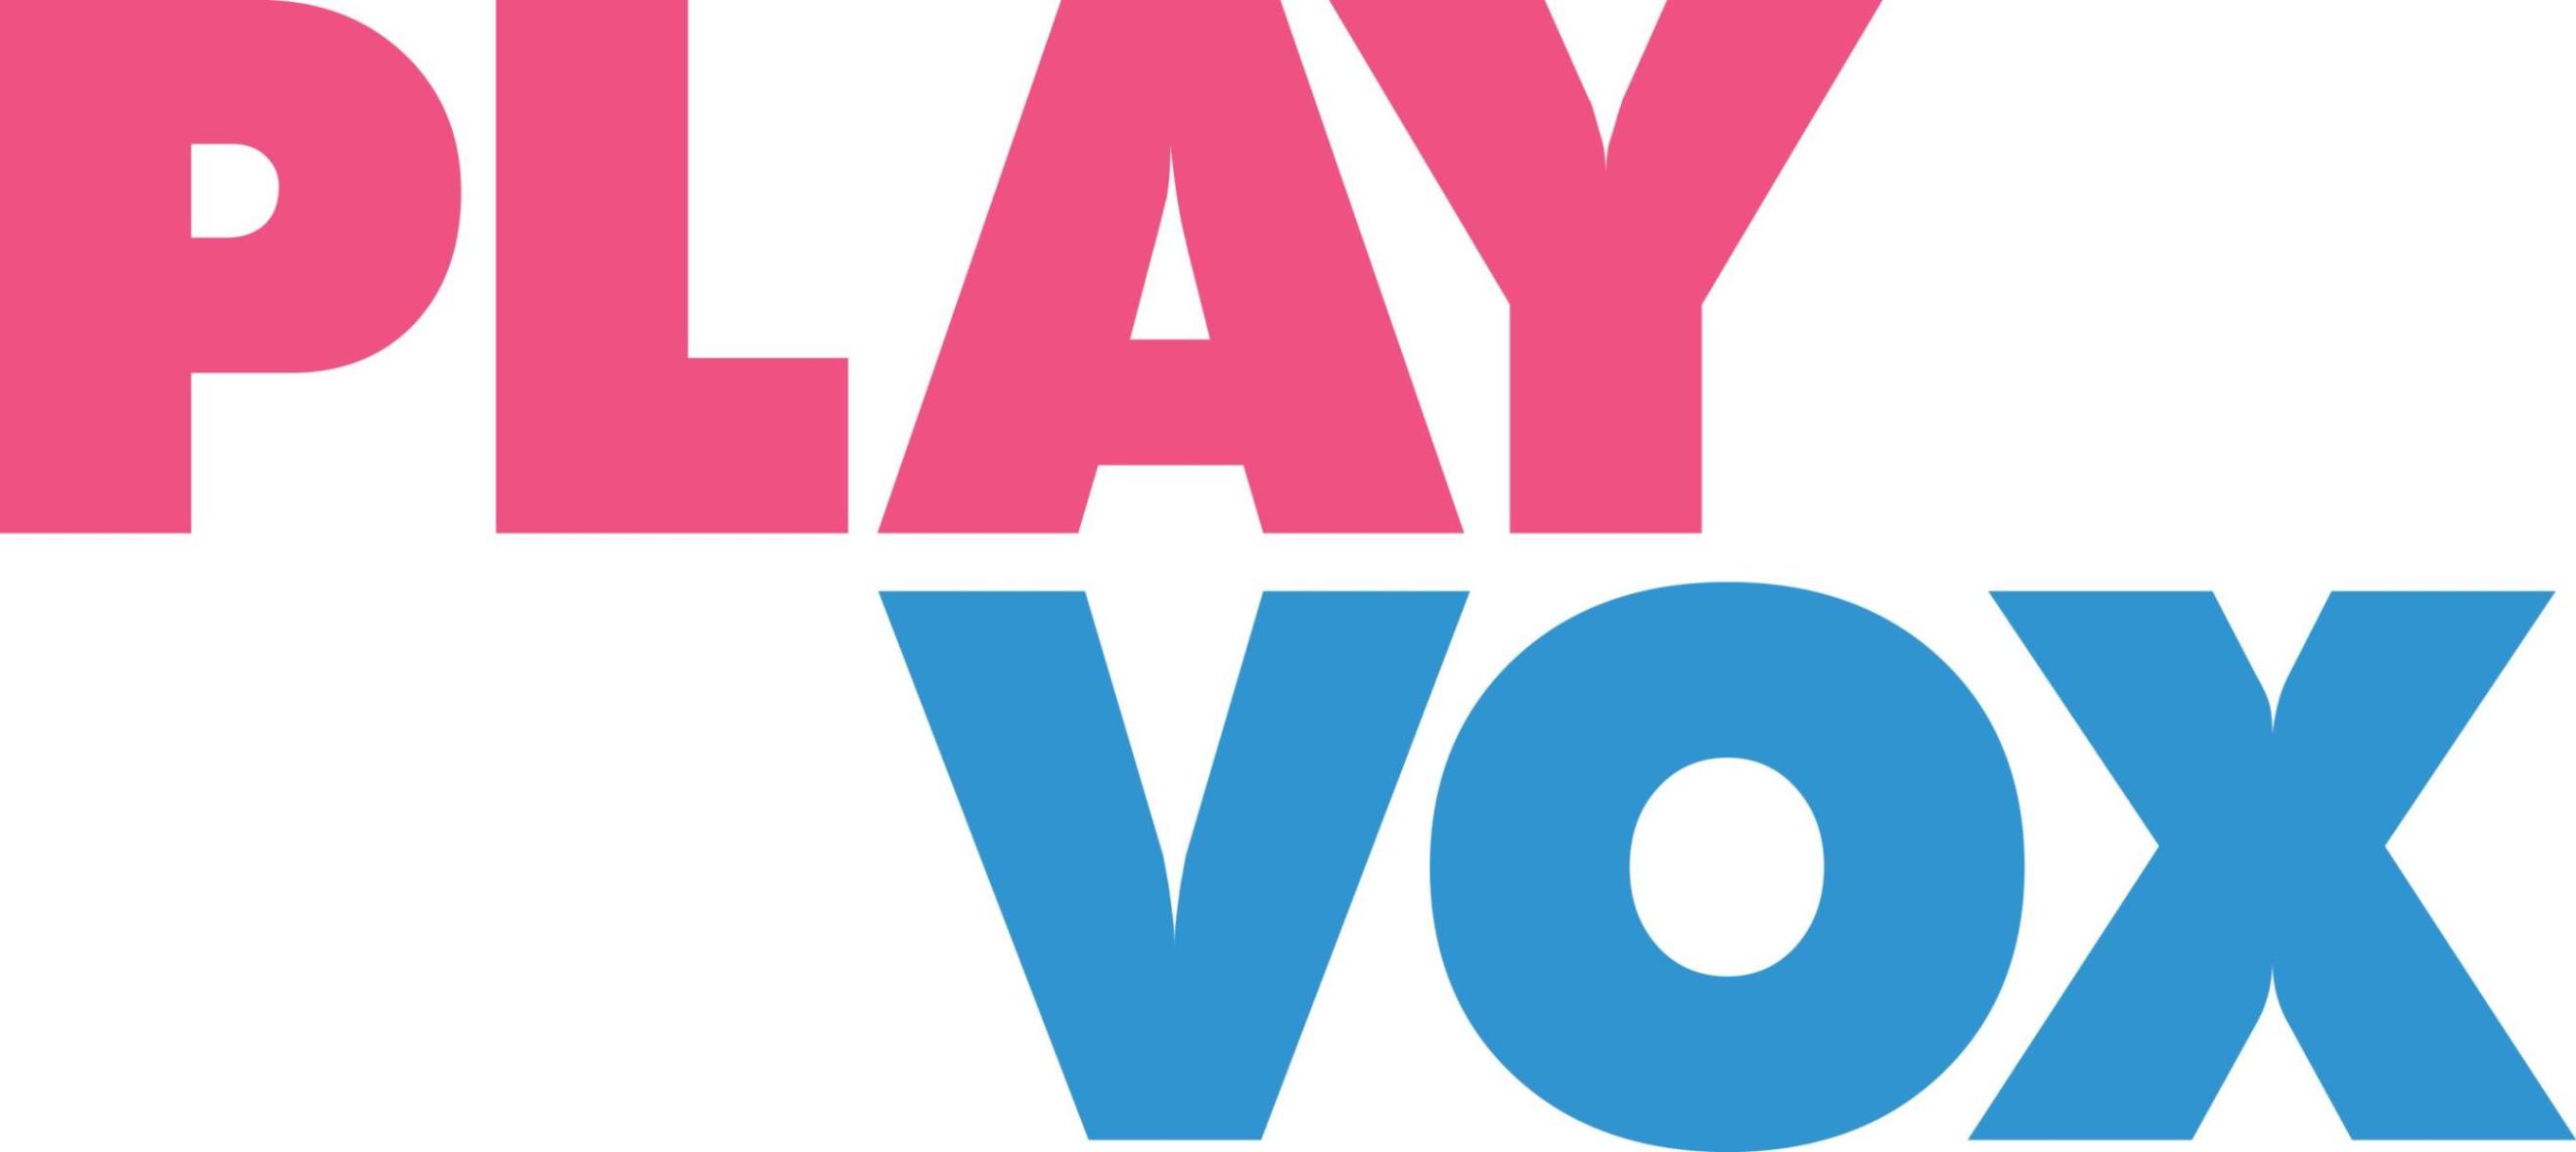 Los dinámicas de los videojuegos llegan a los call centers con PlayVox.com